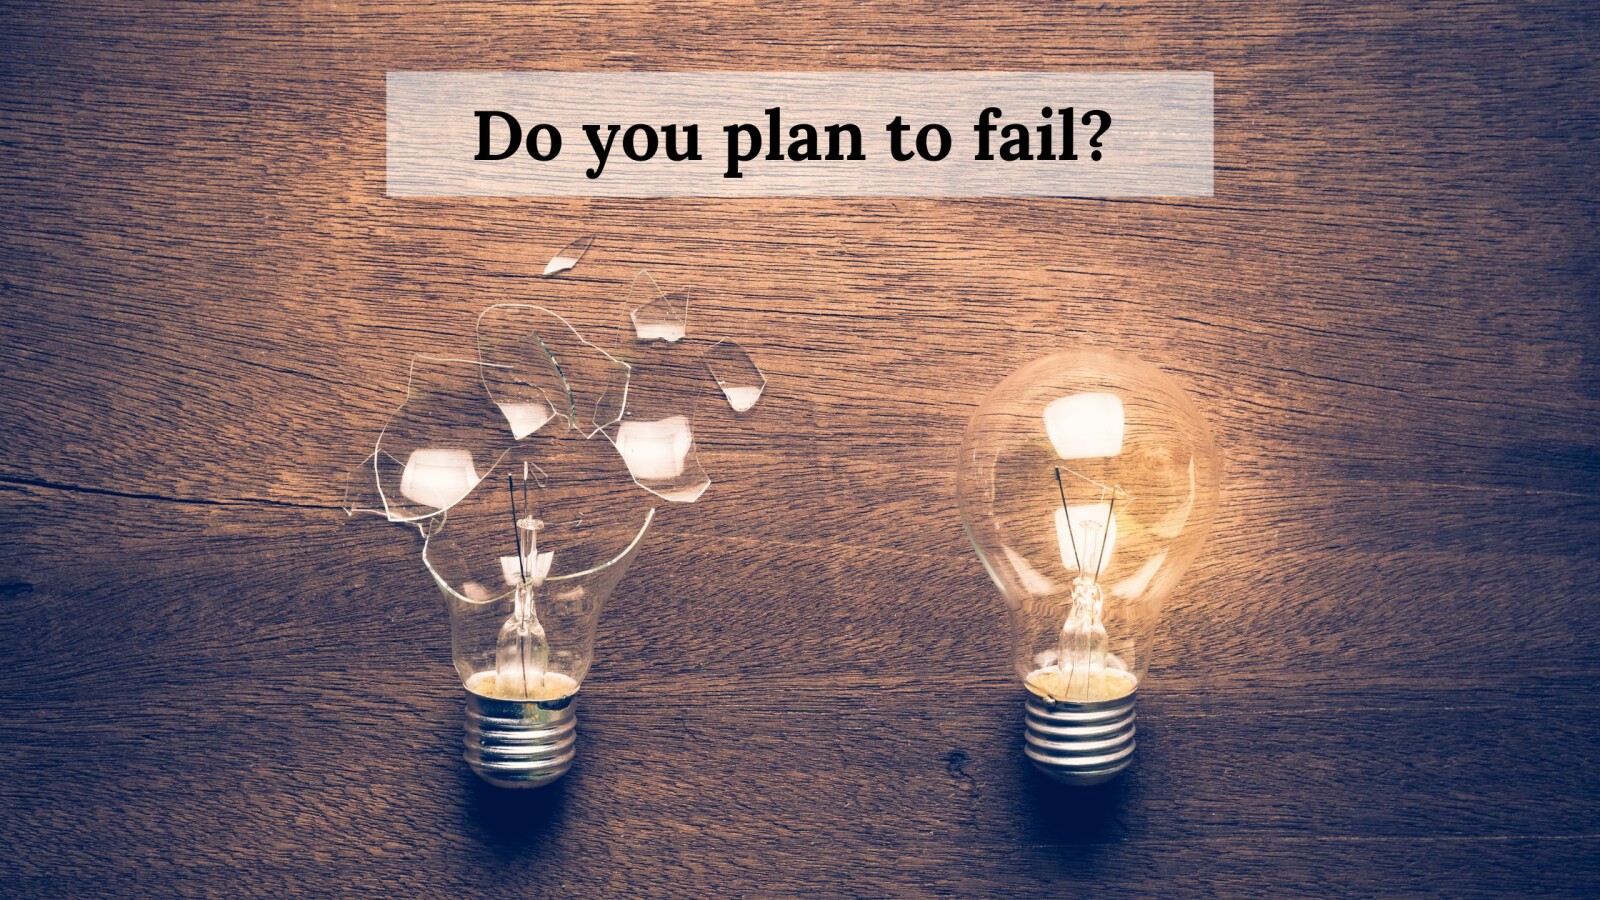 Do you plan to fail?